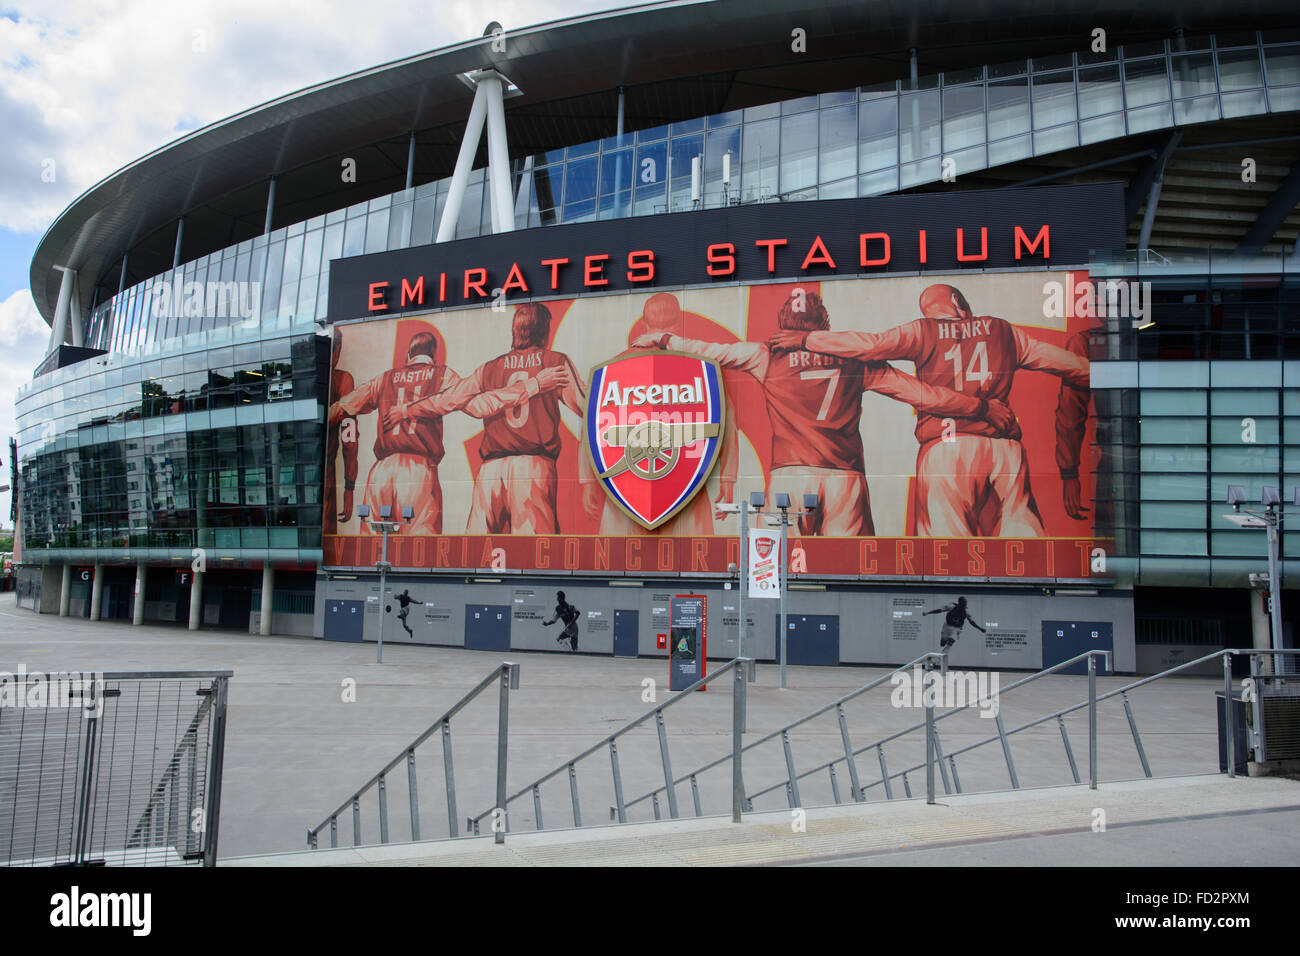 Outside of Emirates Stadium with big Arsenal sign Stock Photo